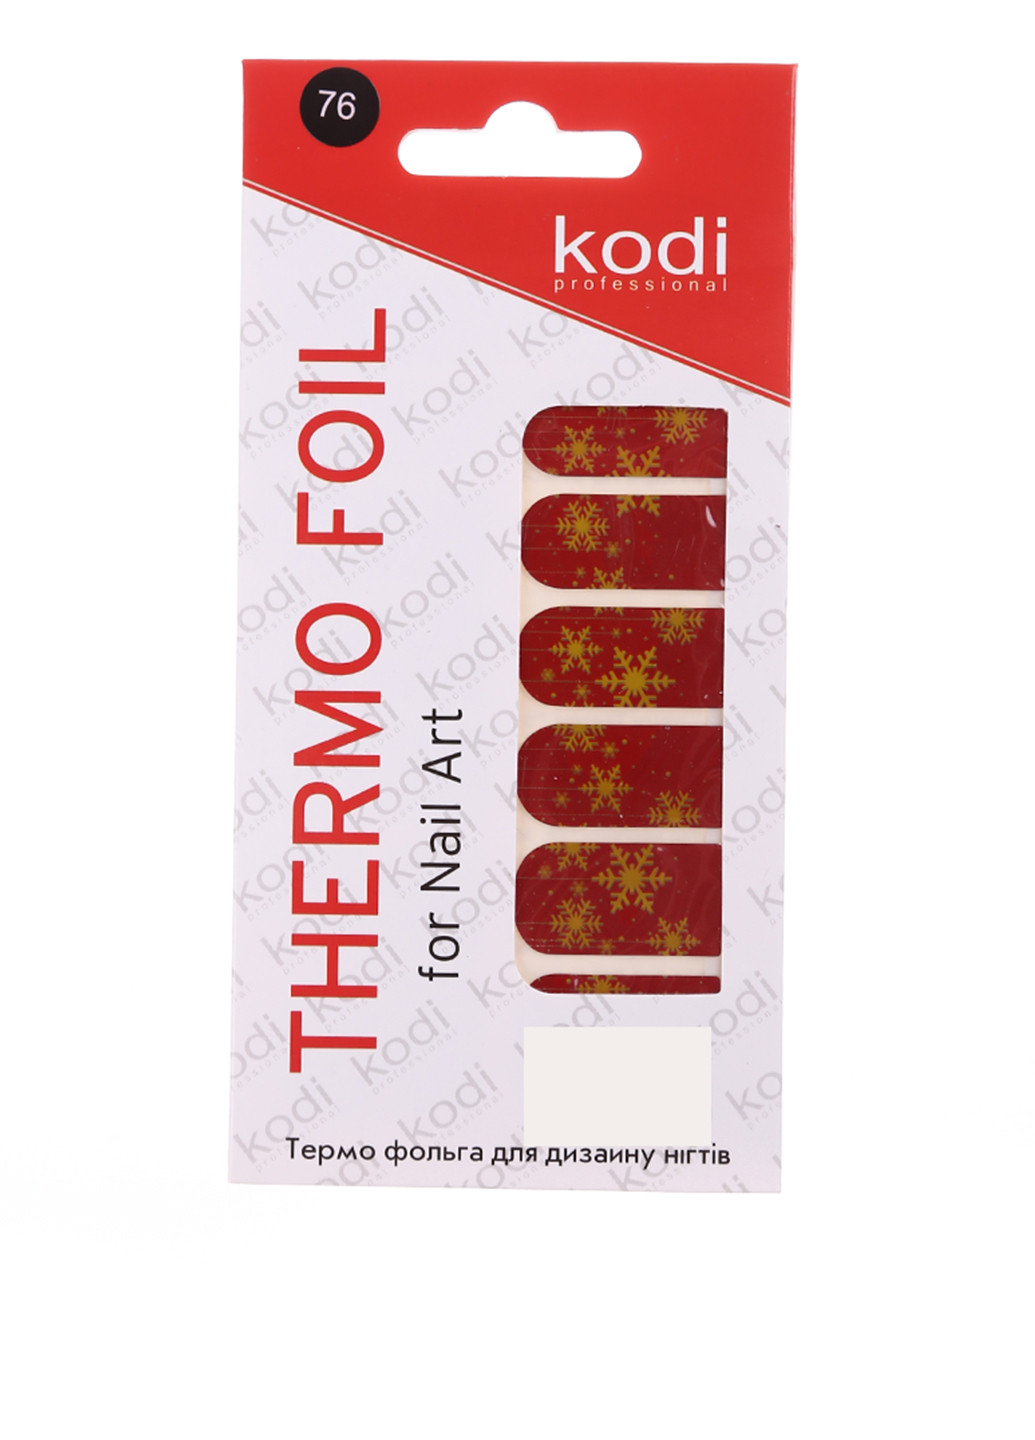 Термо фольга для дизайна ногтей, №76 Kodi Professional (53189208)